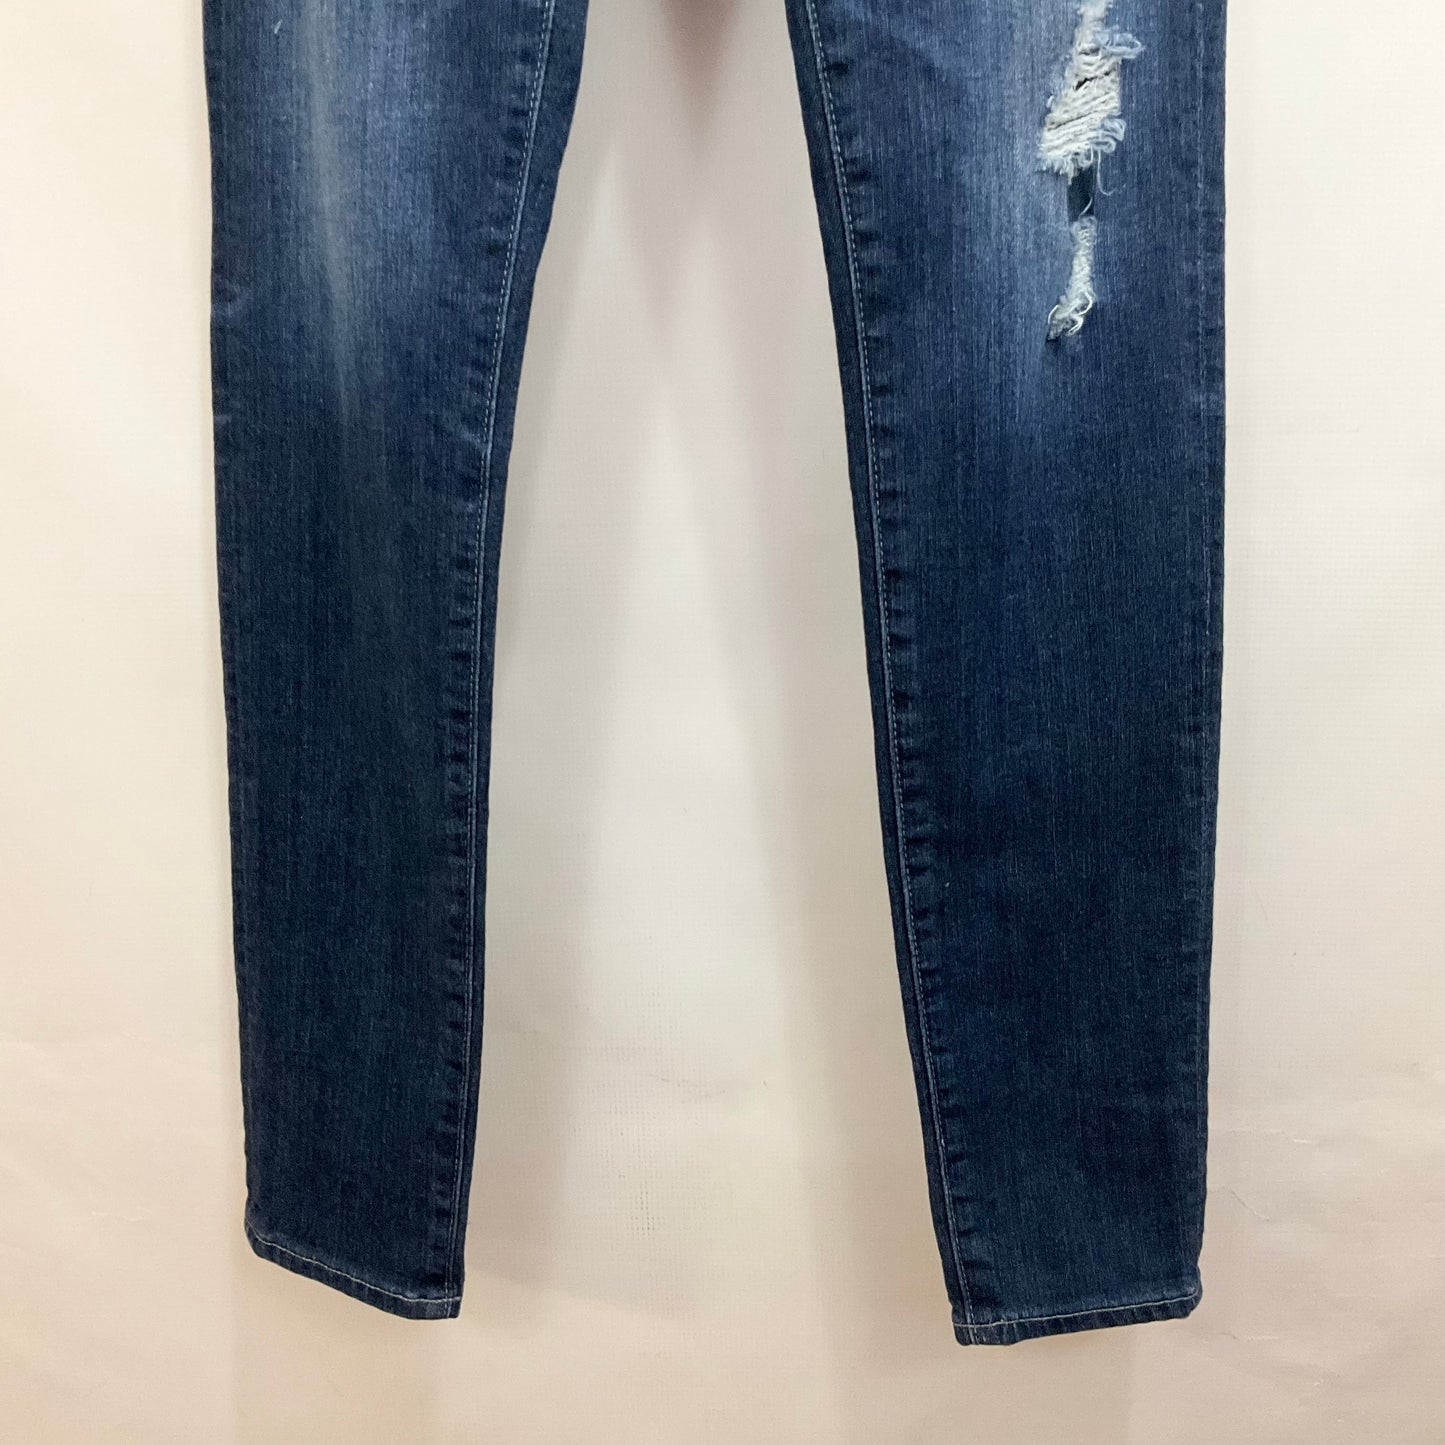 Jeans Skinny By Adriano Goldschmied  Size: 2